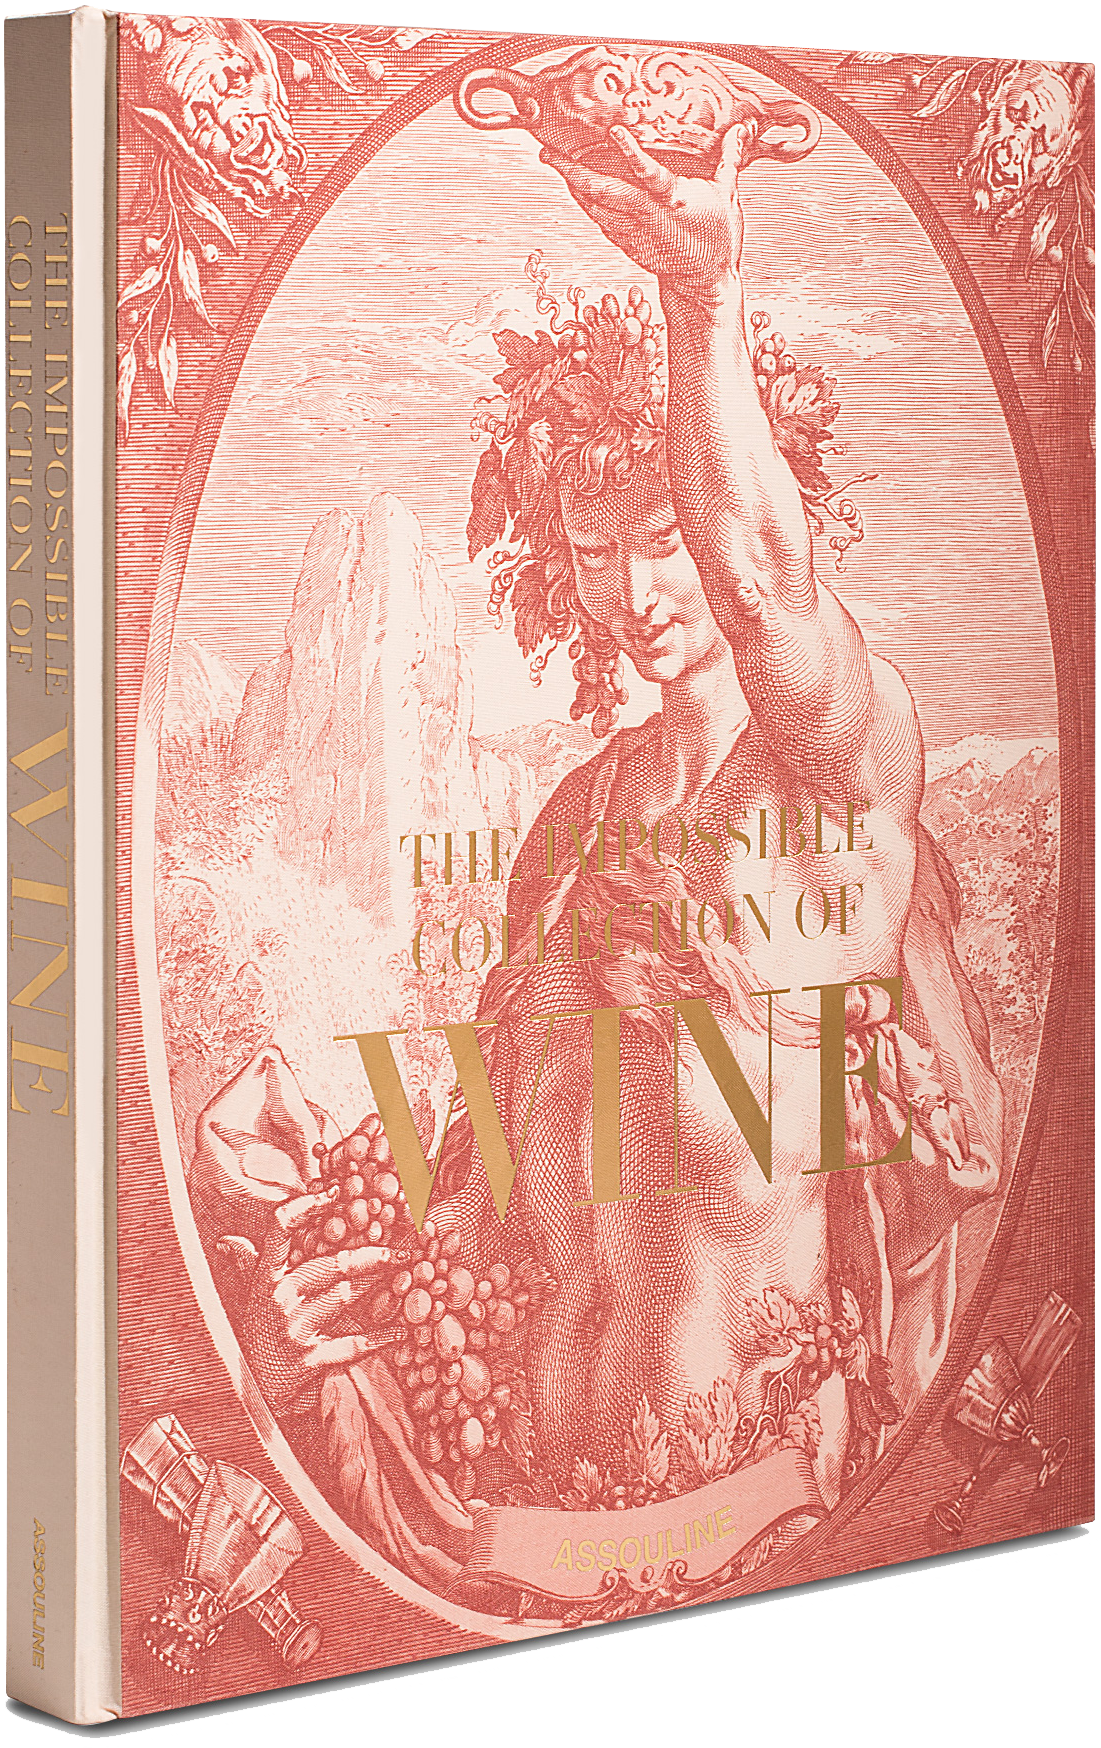 The Impossible Collection of Wine in  präsentiert im Onlineshop von KAQTU Design AG. Kunstgegenstände ist von Assouline